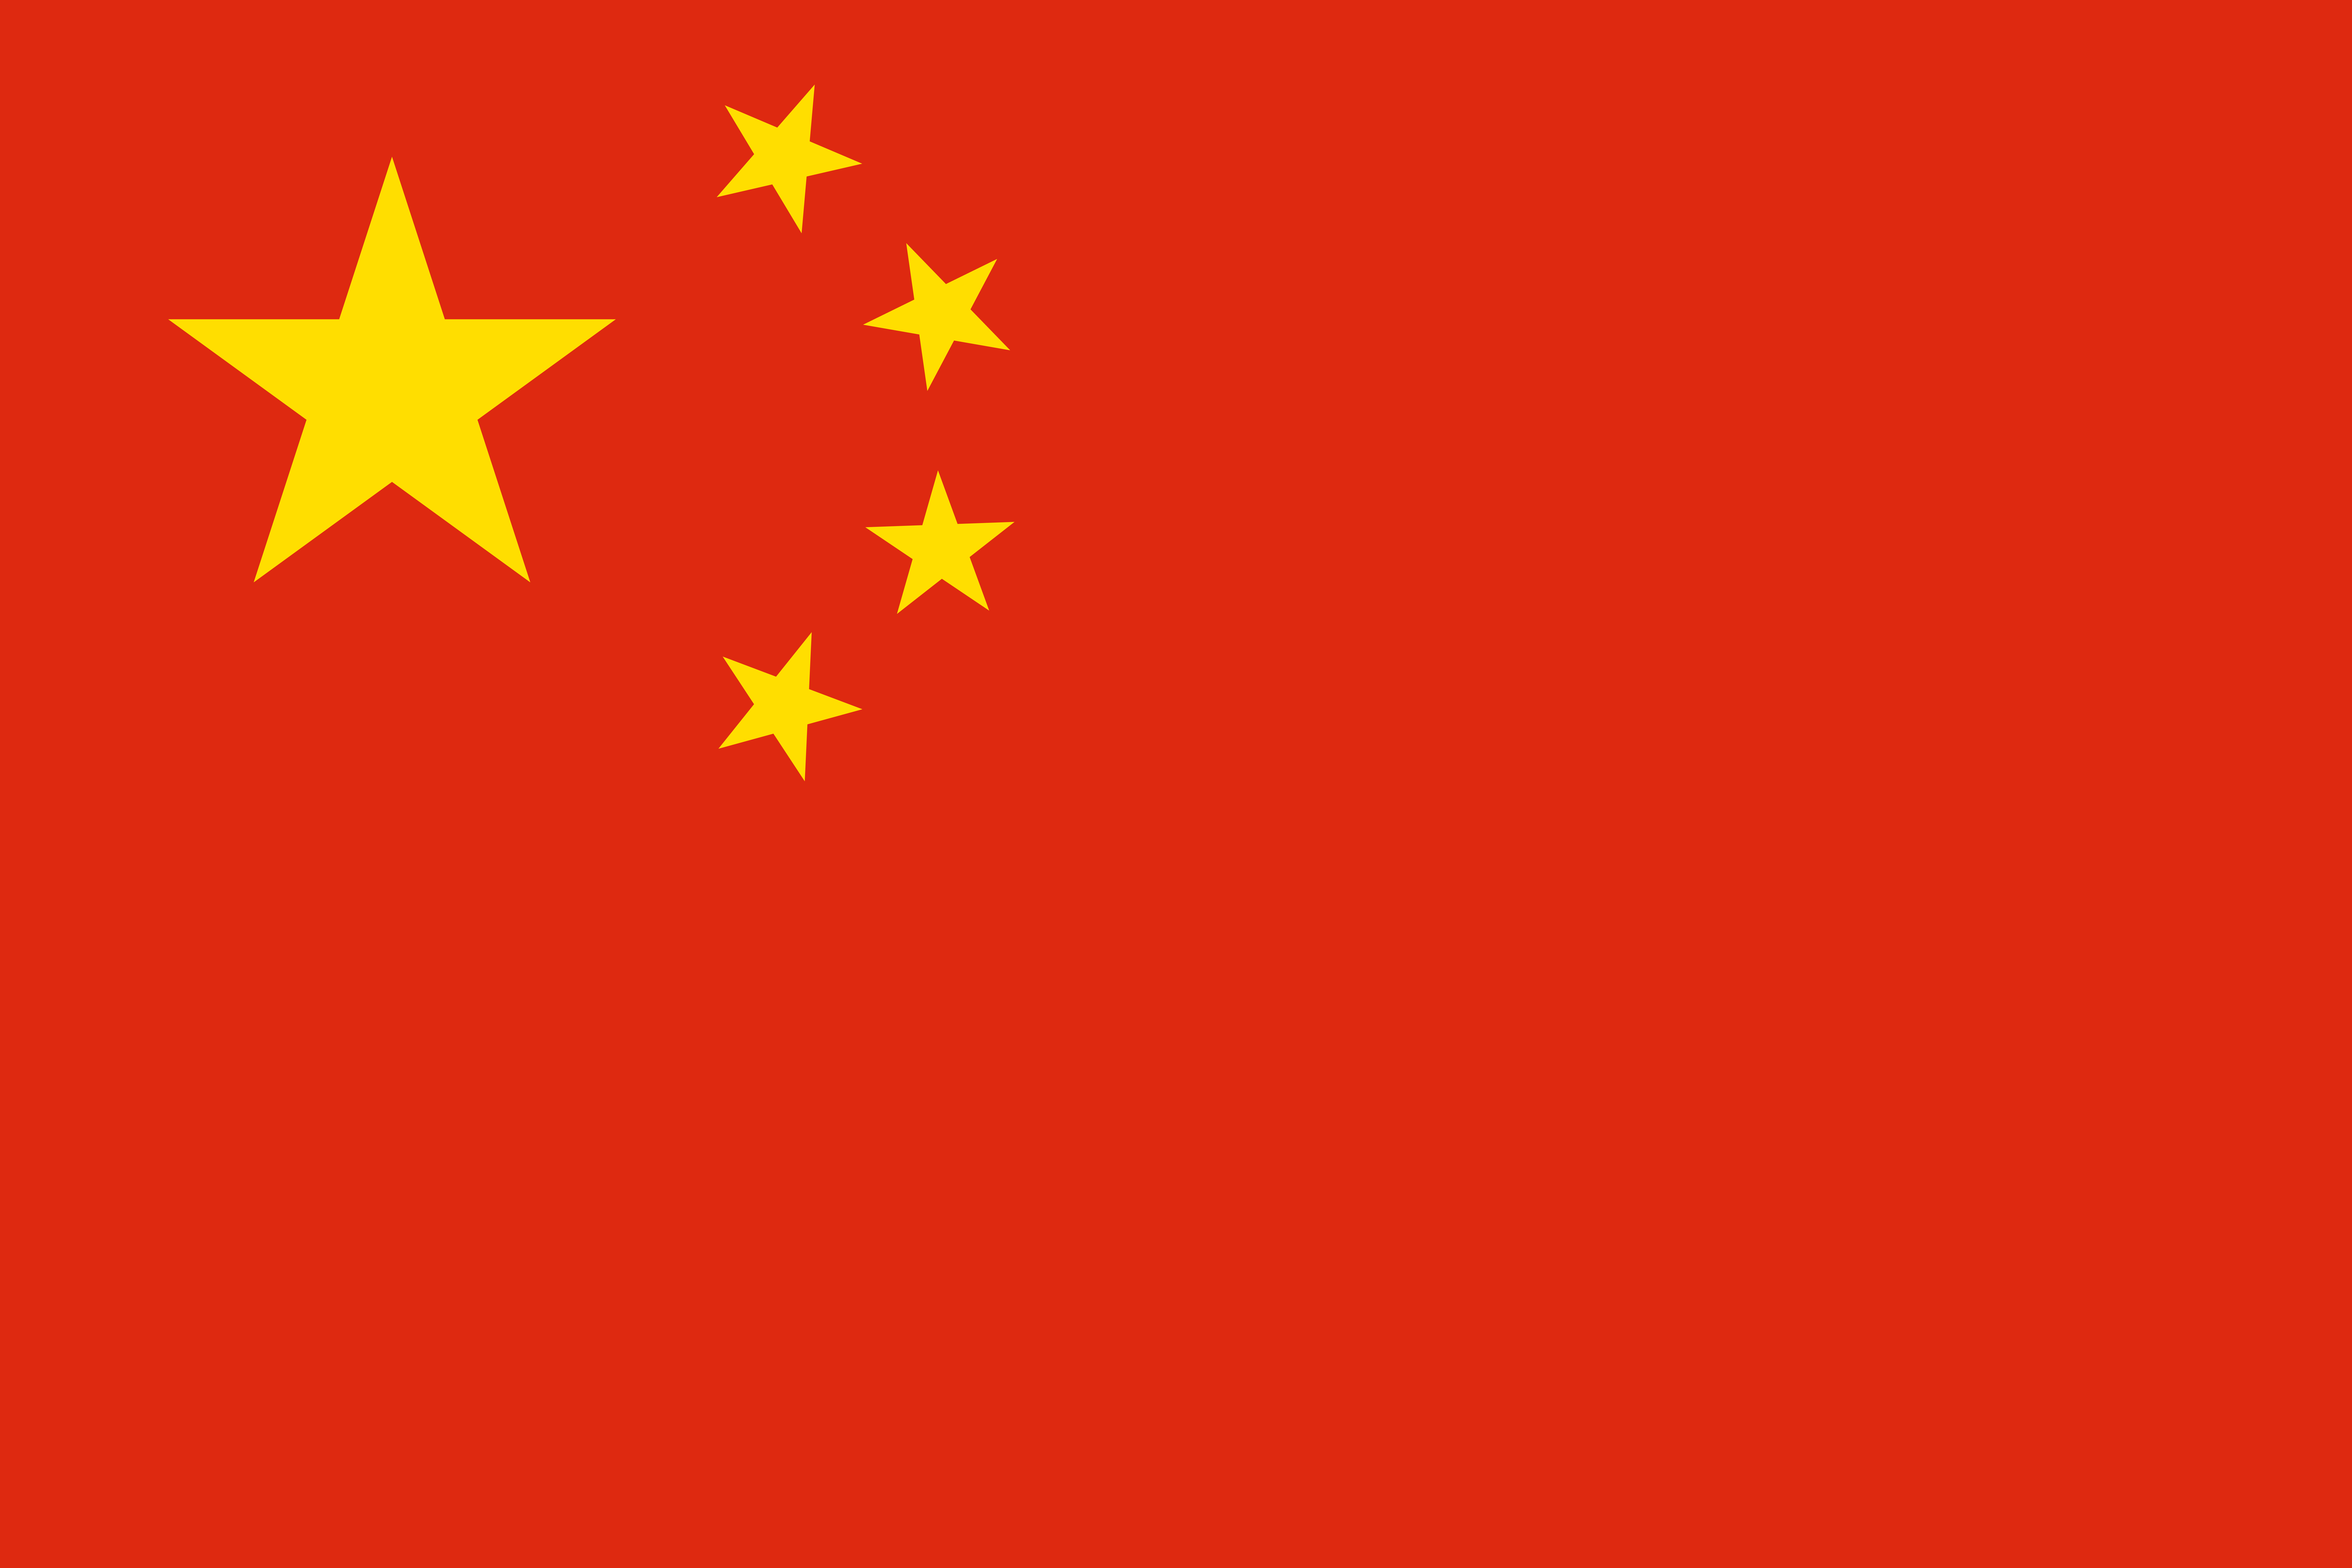 五星红旗图片 中华人民共和国国旗是五星红旗